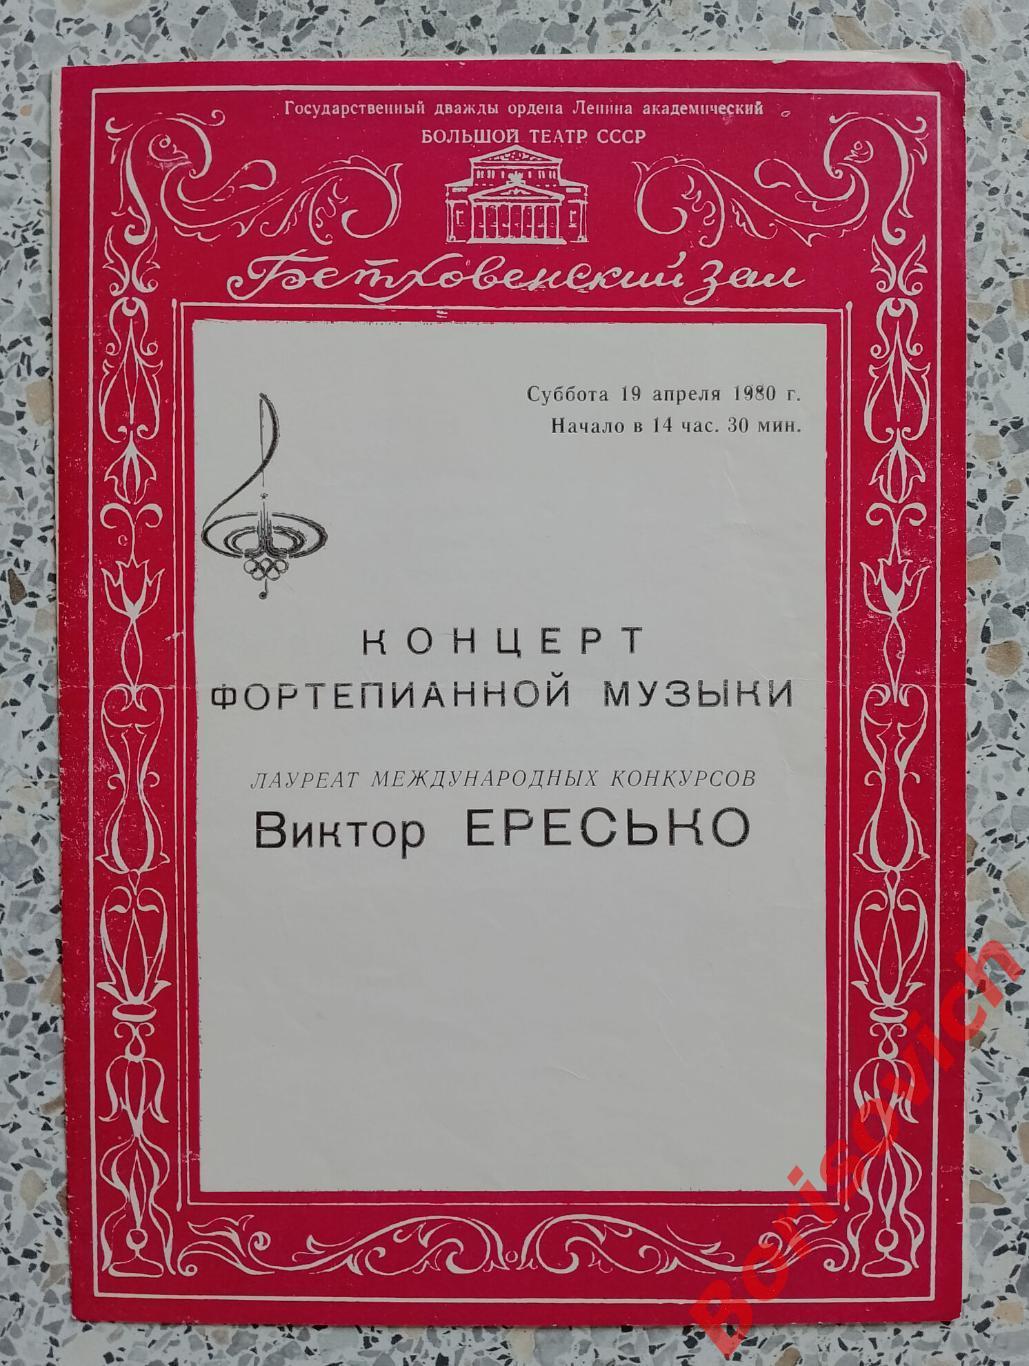 Большой театр Концерт фортепианной музыки Виктор Ересько 1980 Тираж 200 экз.